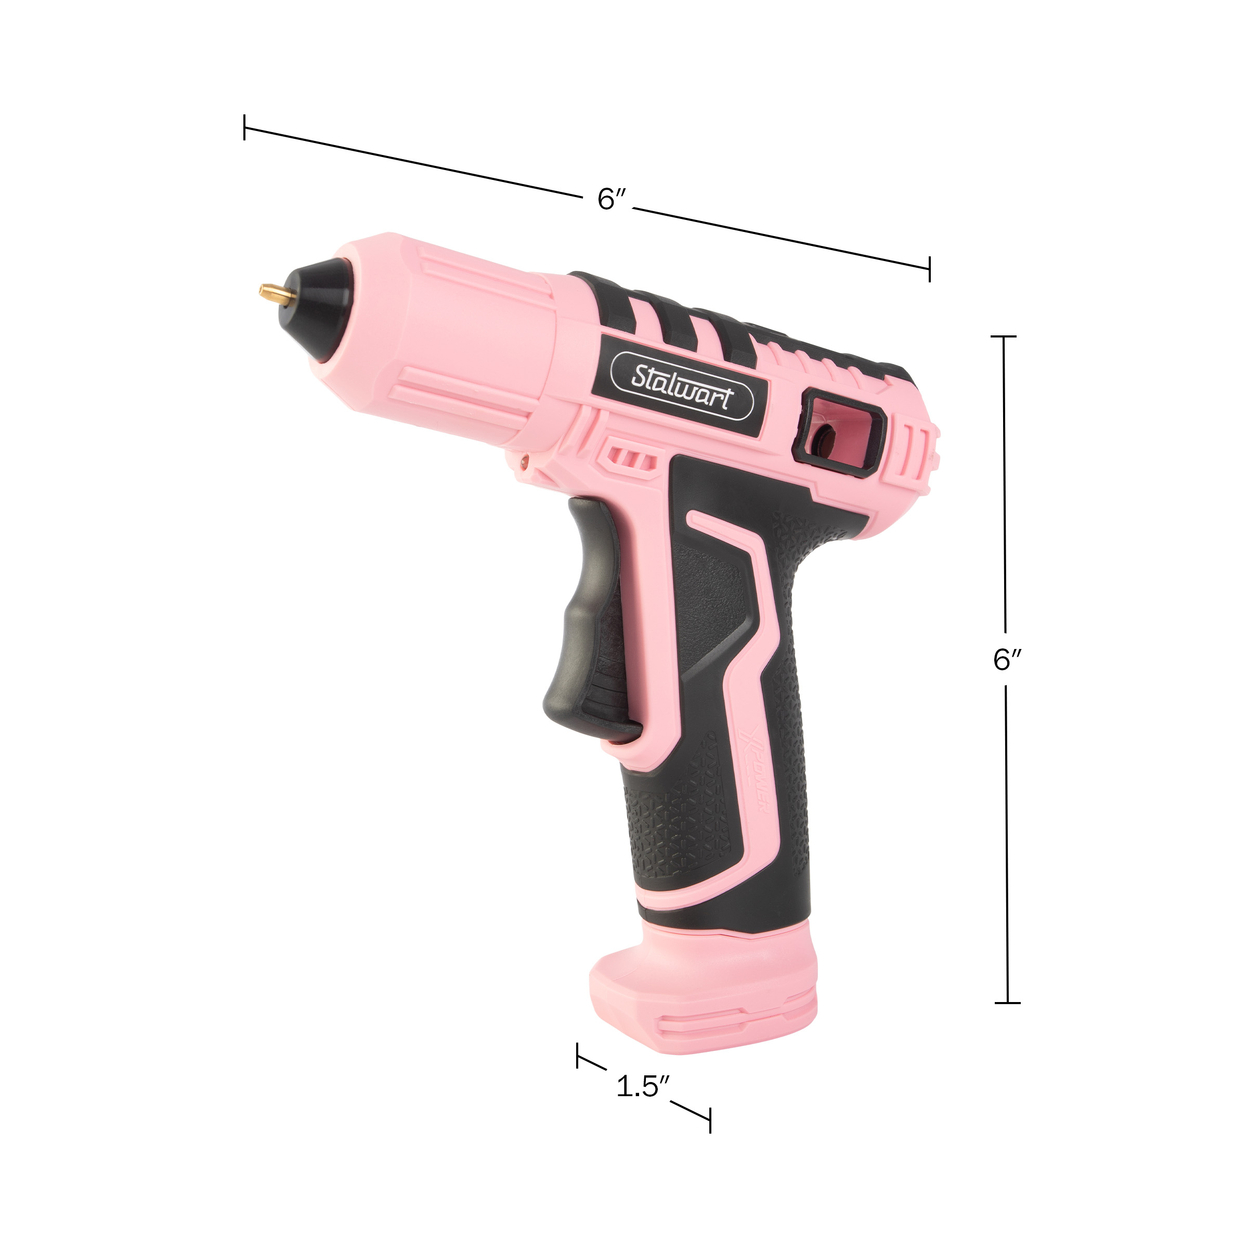 Stalwart 4V Cordless Glue Tool Kit - Pink